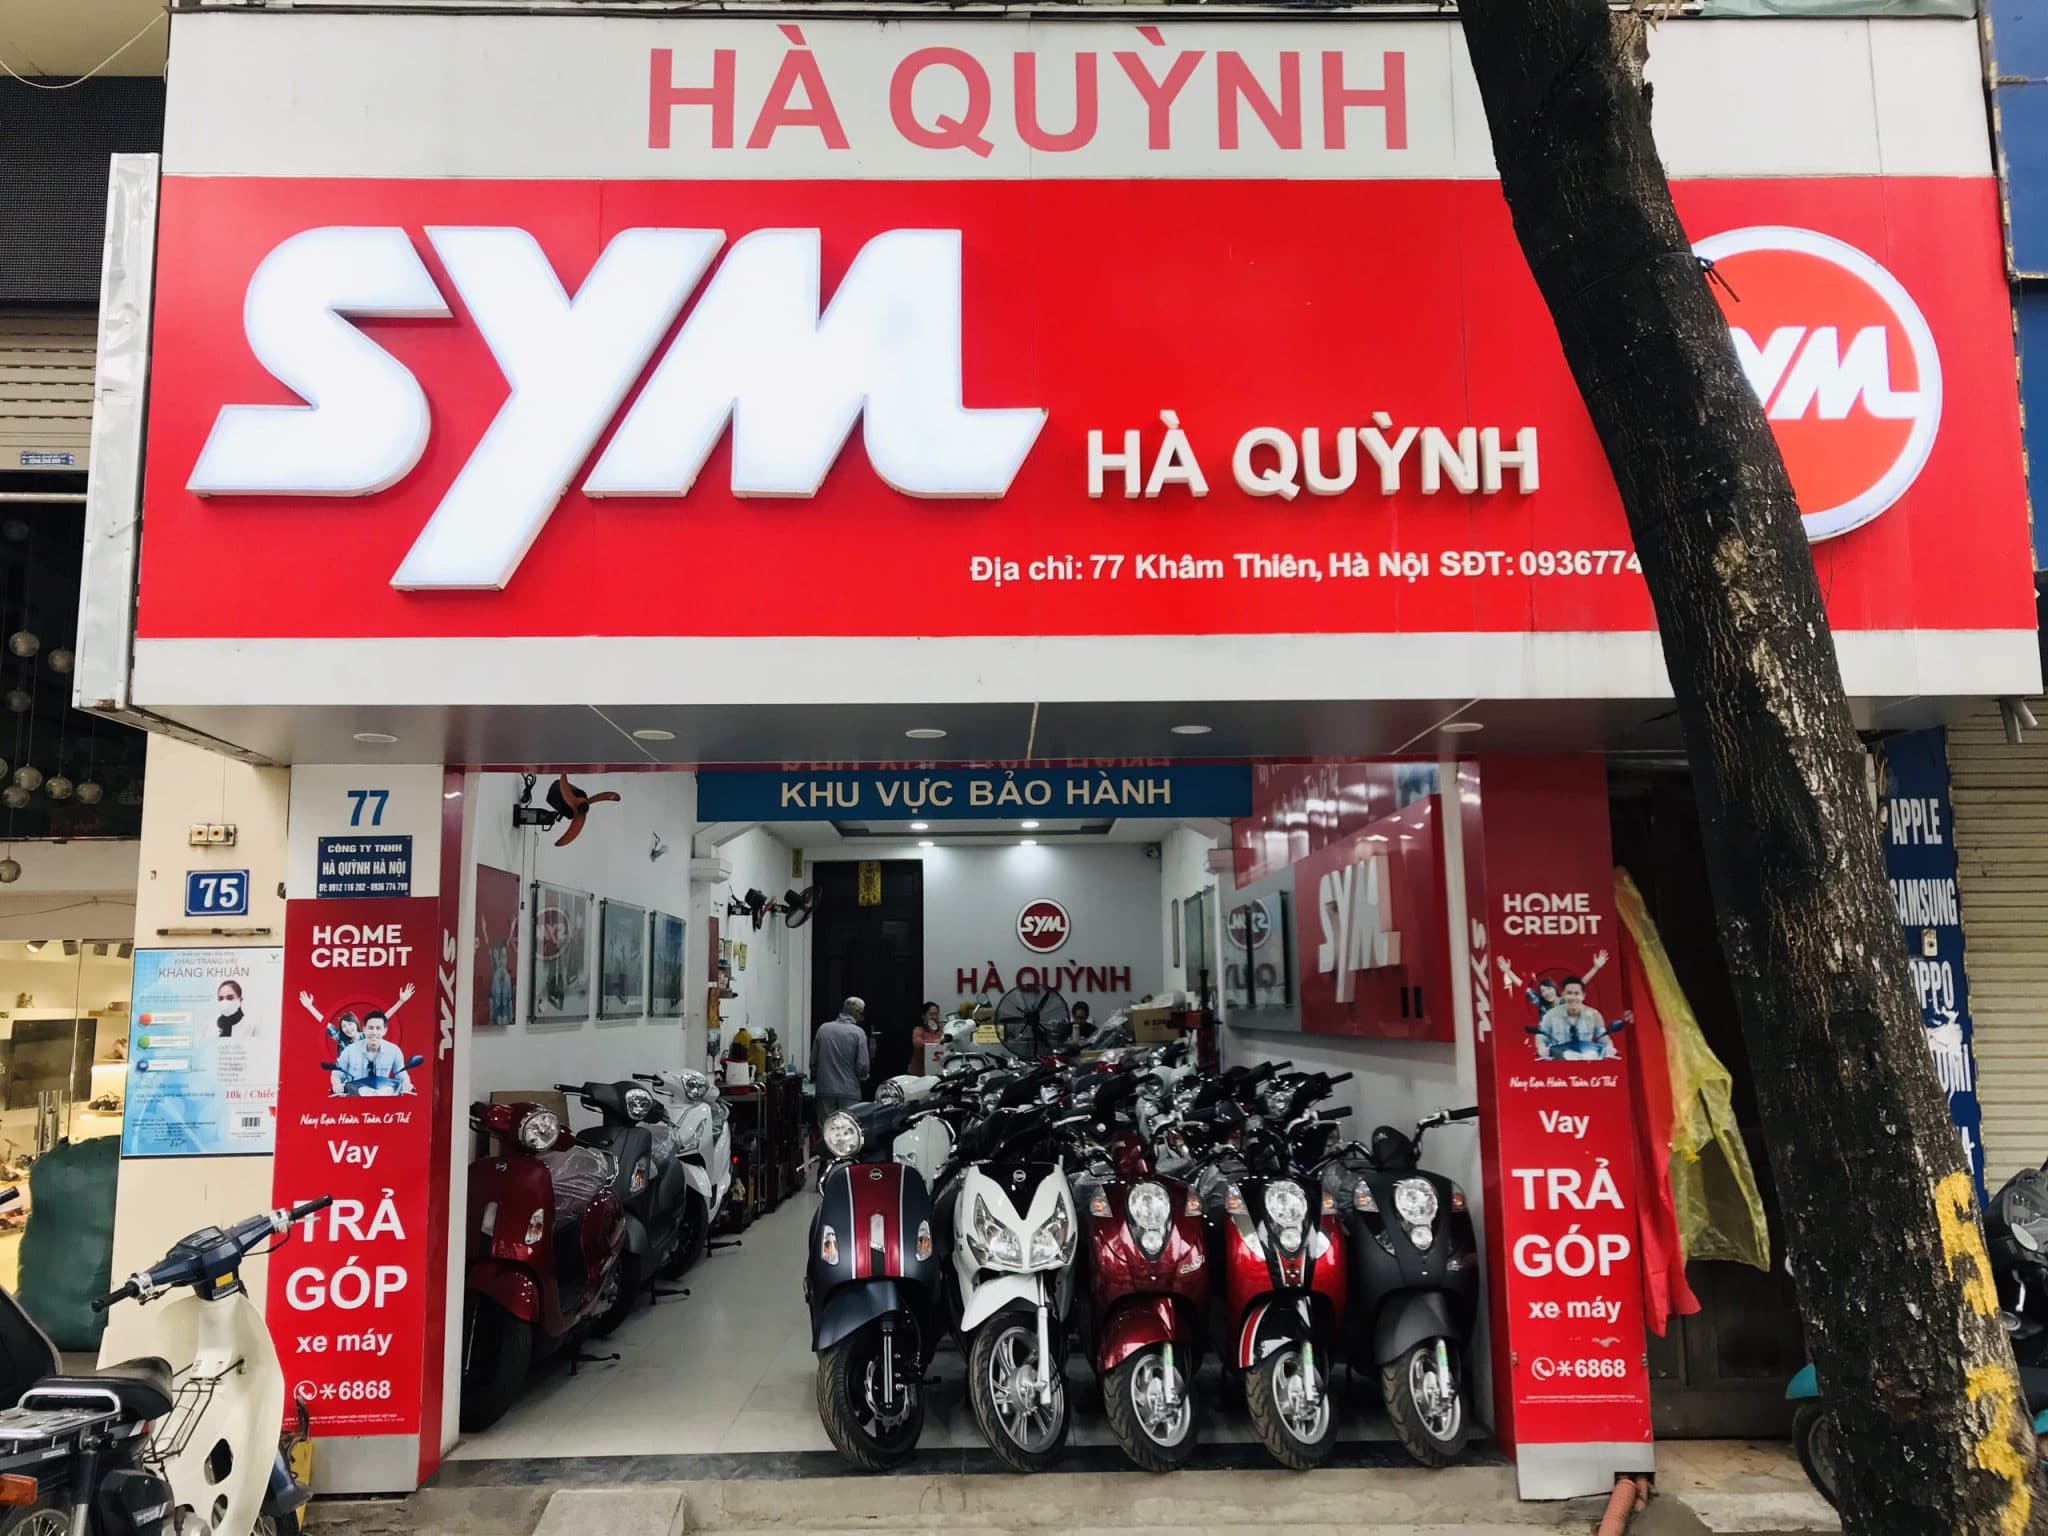 F88 cửa hàng mua bán xe máy cũ trả góp tại Hà Nội uy tín